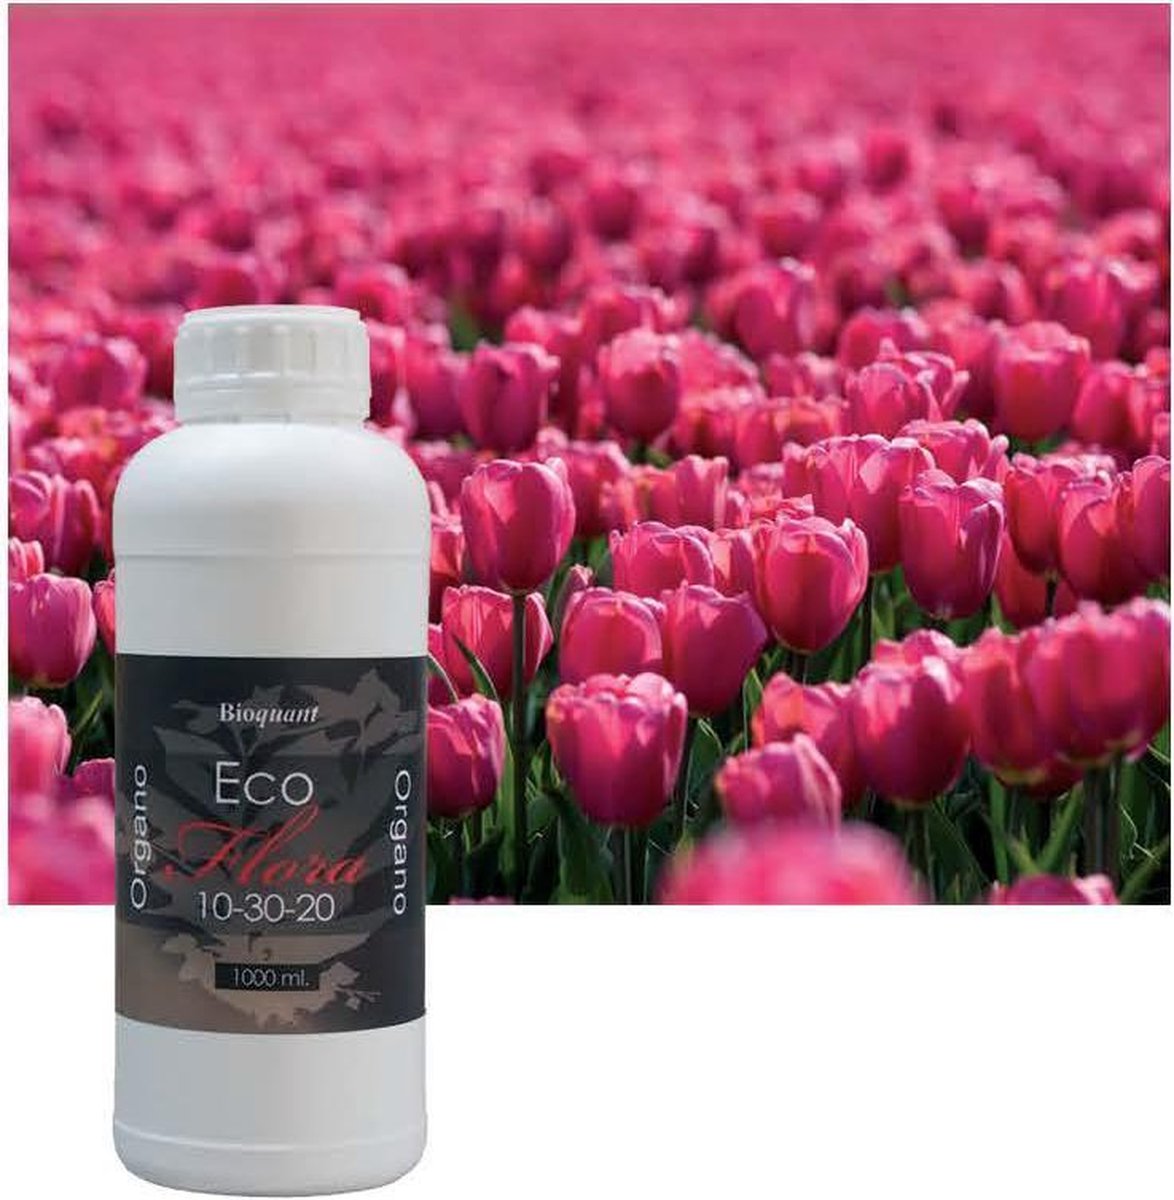 Bioquant Eco Flora 1 liter